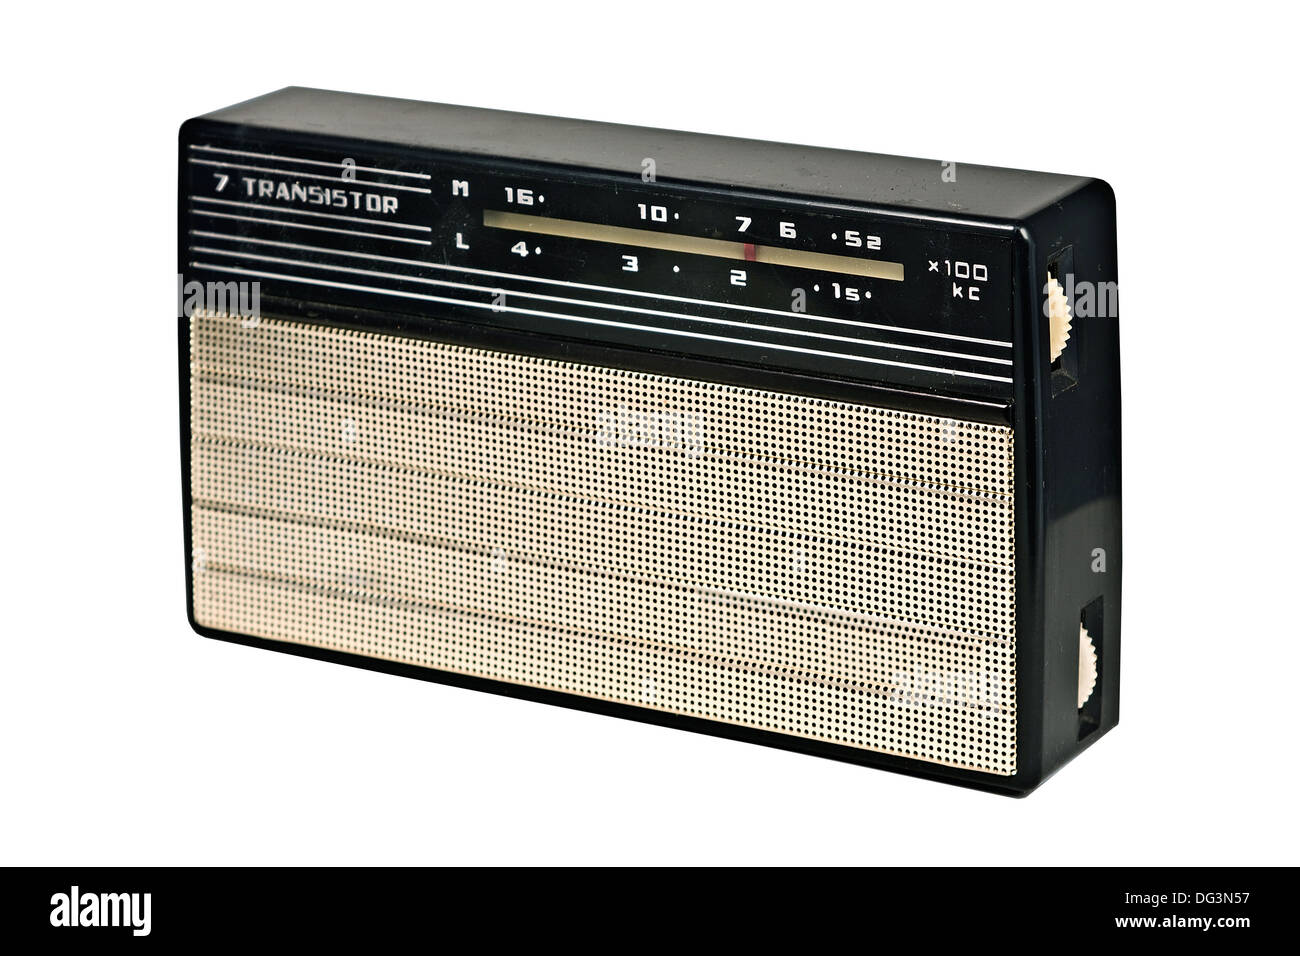 Vintage Portable Transistor Radio Isolated on White Background Stock Photo  by ©Qingwa 7896491